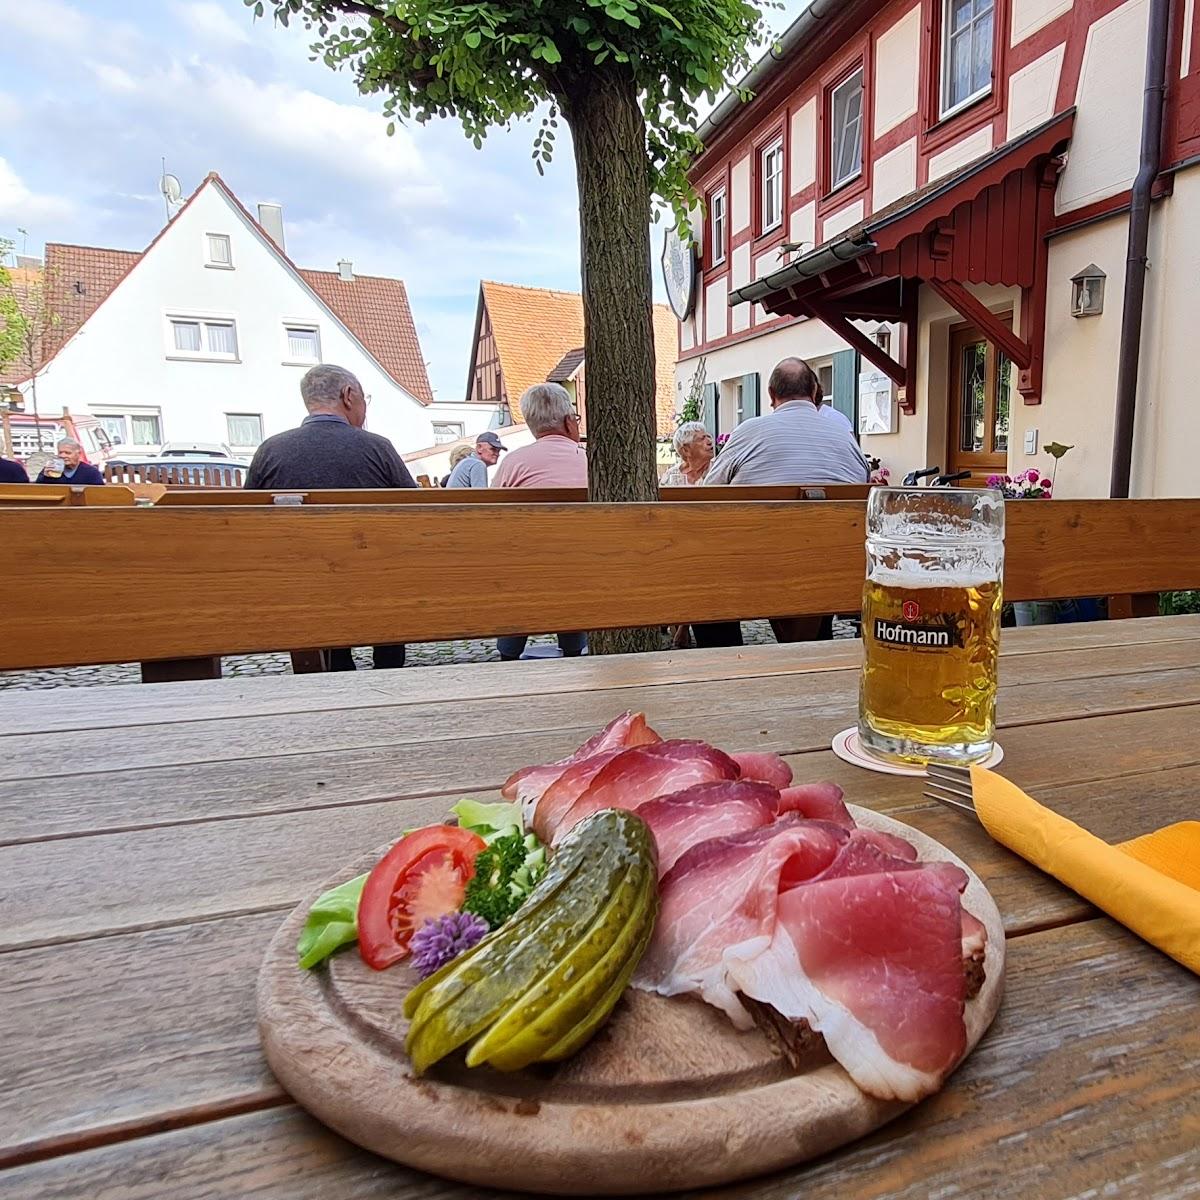 Restaurant "Gasthaus Christ" in Bad Windsheim